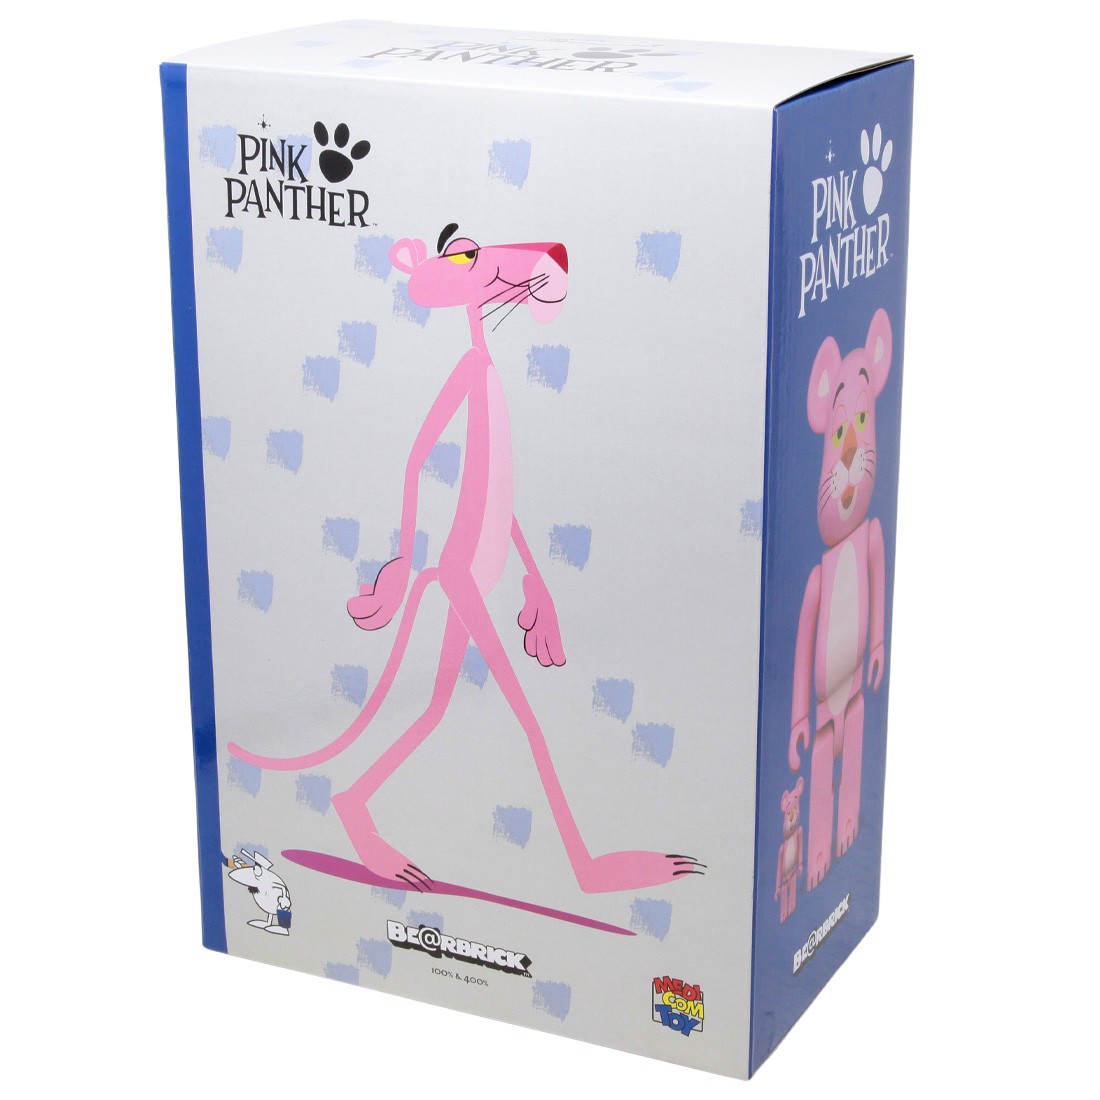 Medicom Pink Panther 100% 400% Bearbrick Figure Set pink